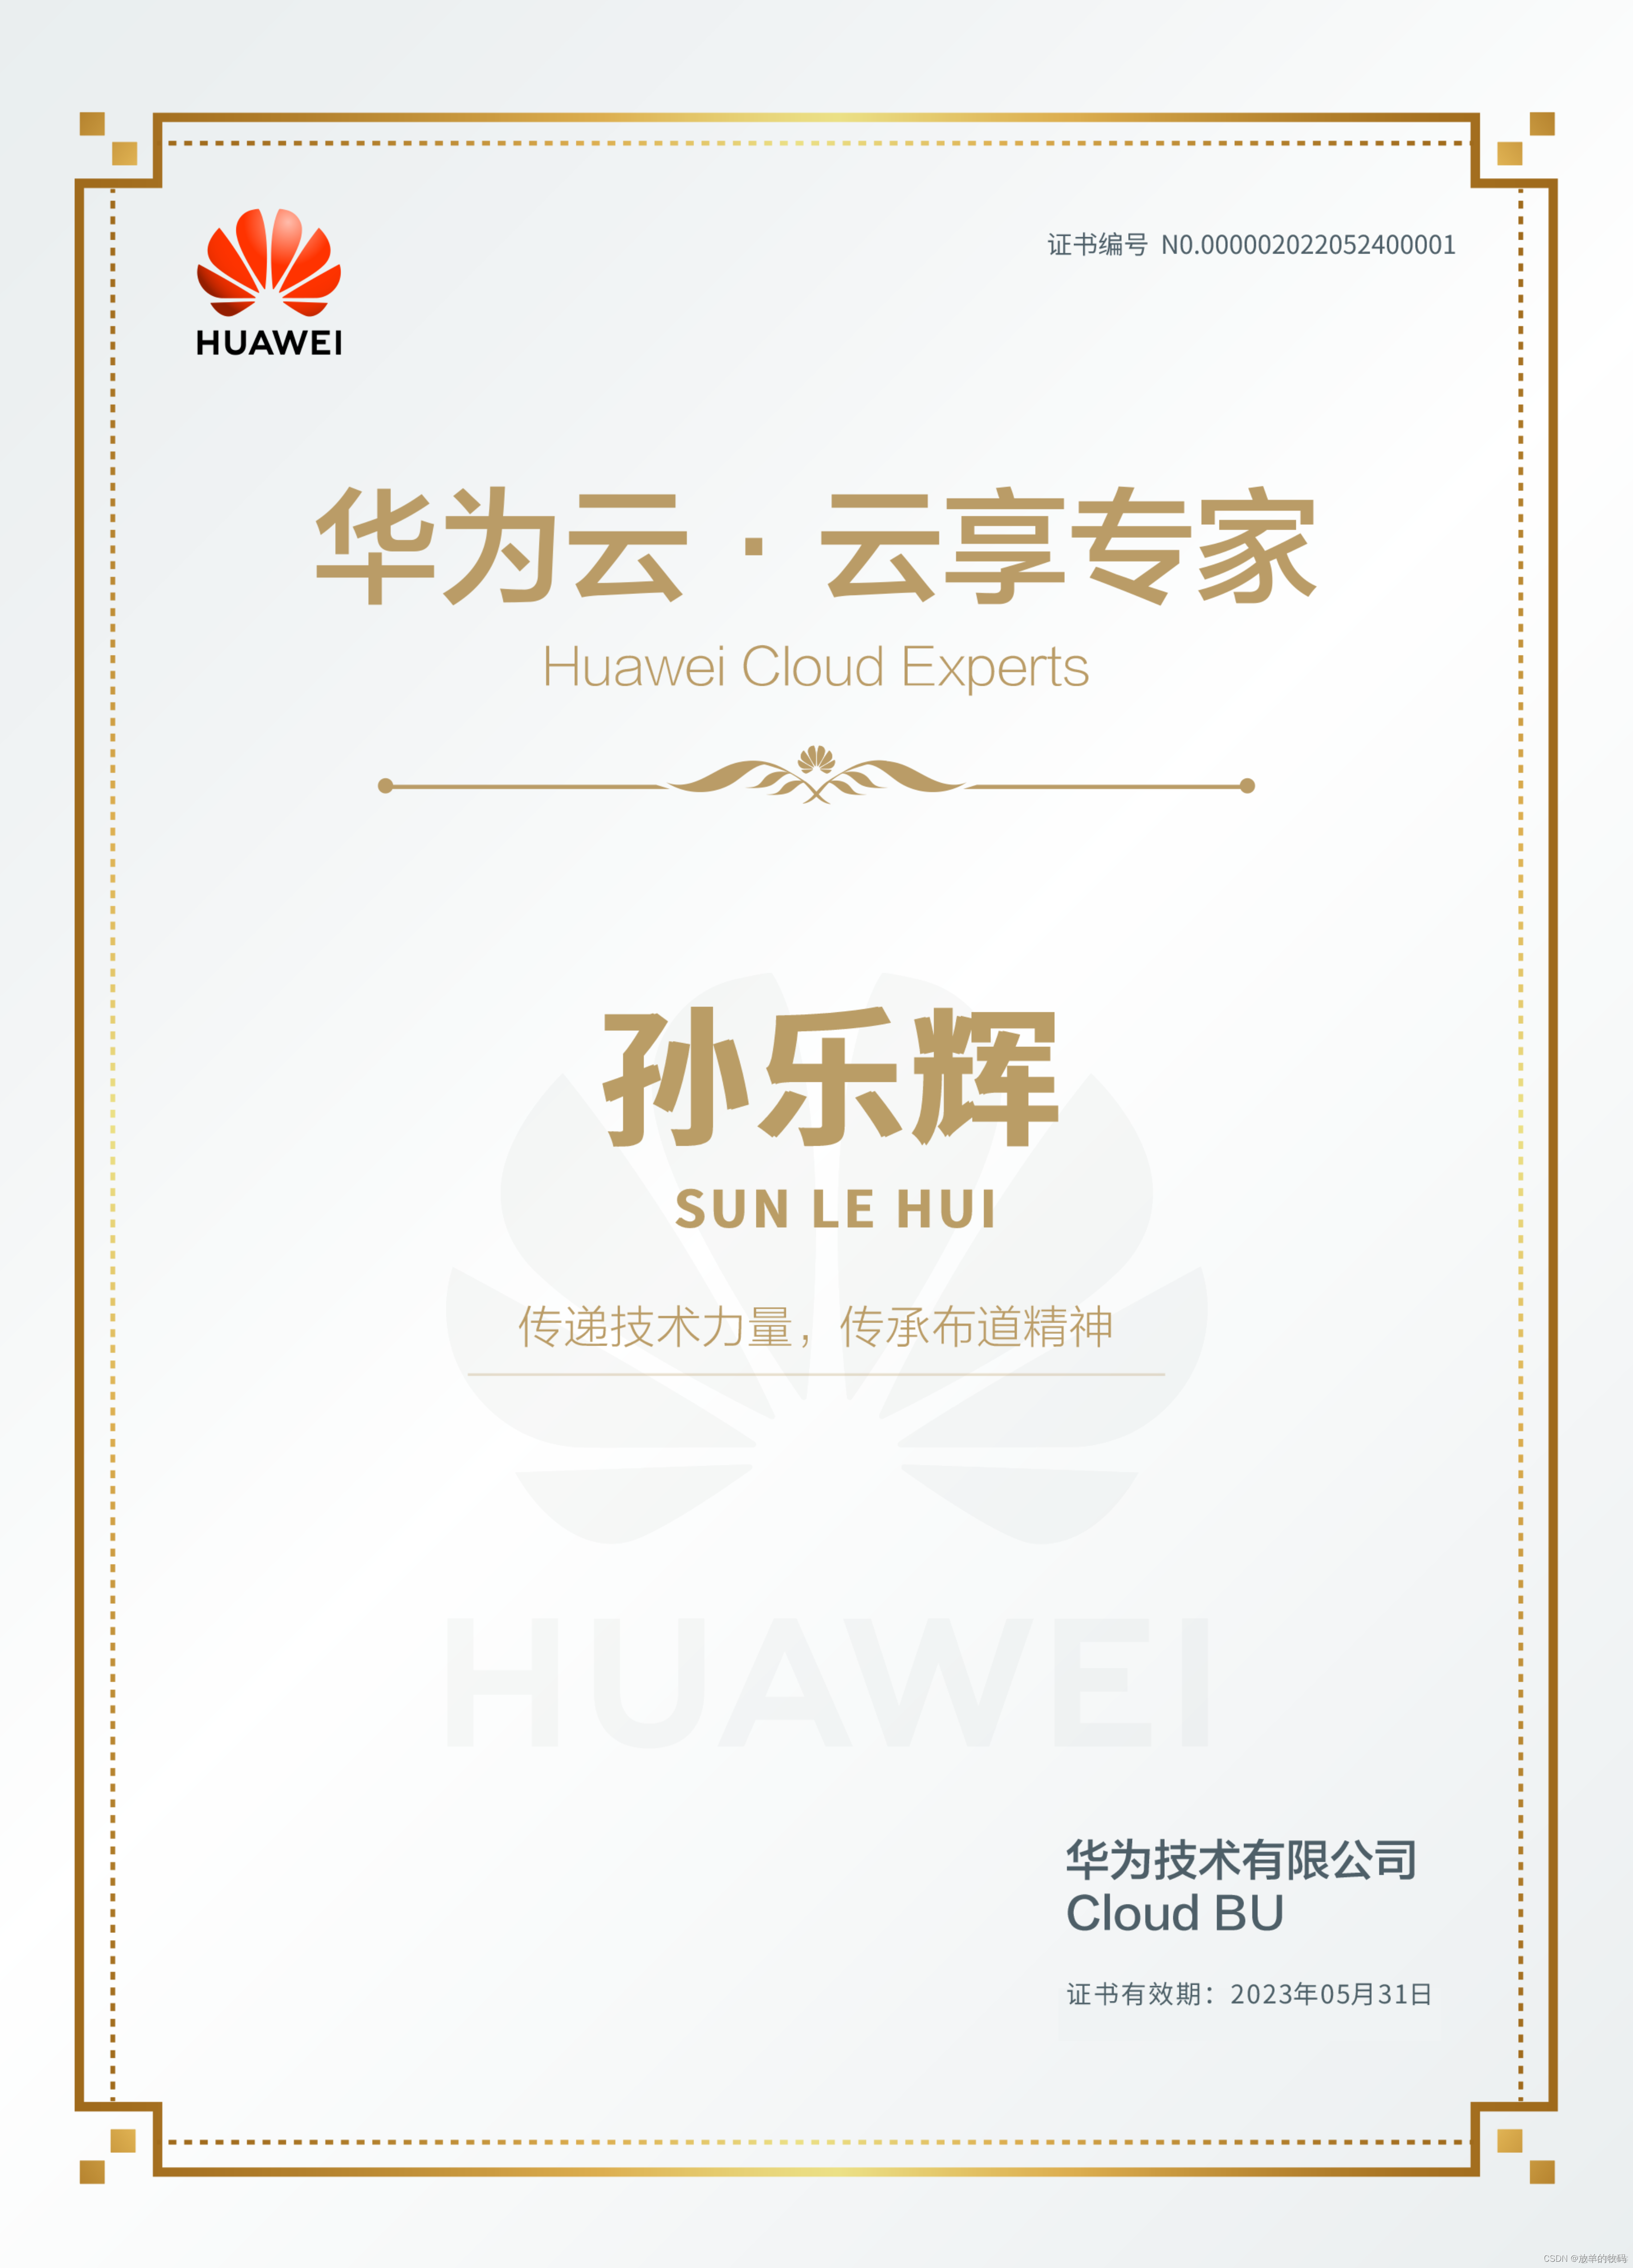 程序人生 - 华为云 - 云享专家（Huawei Cloud Experts）_Cloud